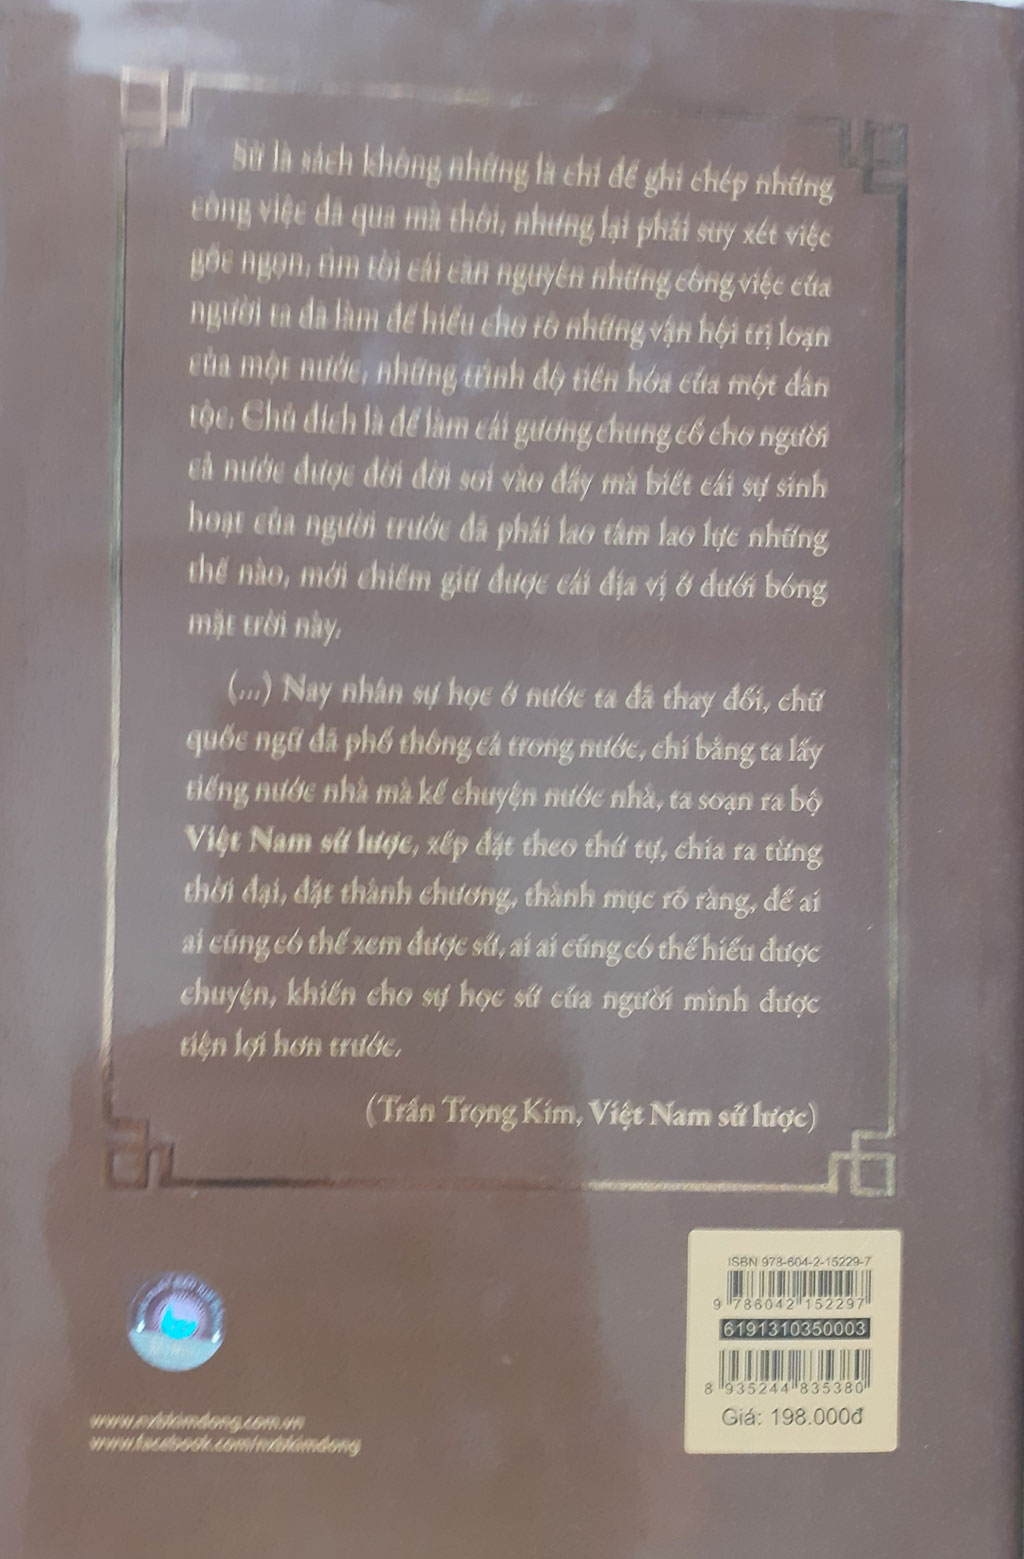 Năm thế kỷ đề tên Qui Nhơn trong nguyên bản Việt Nam sử lược2